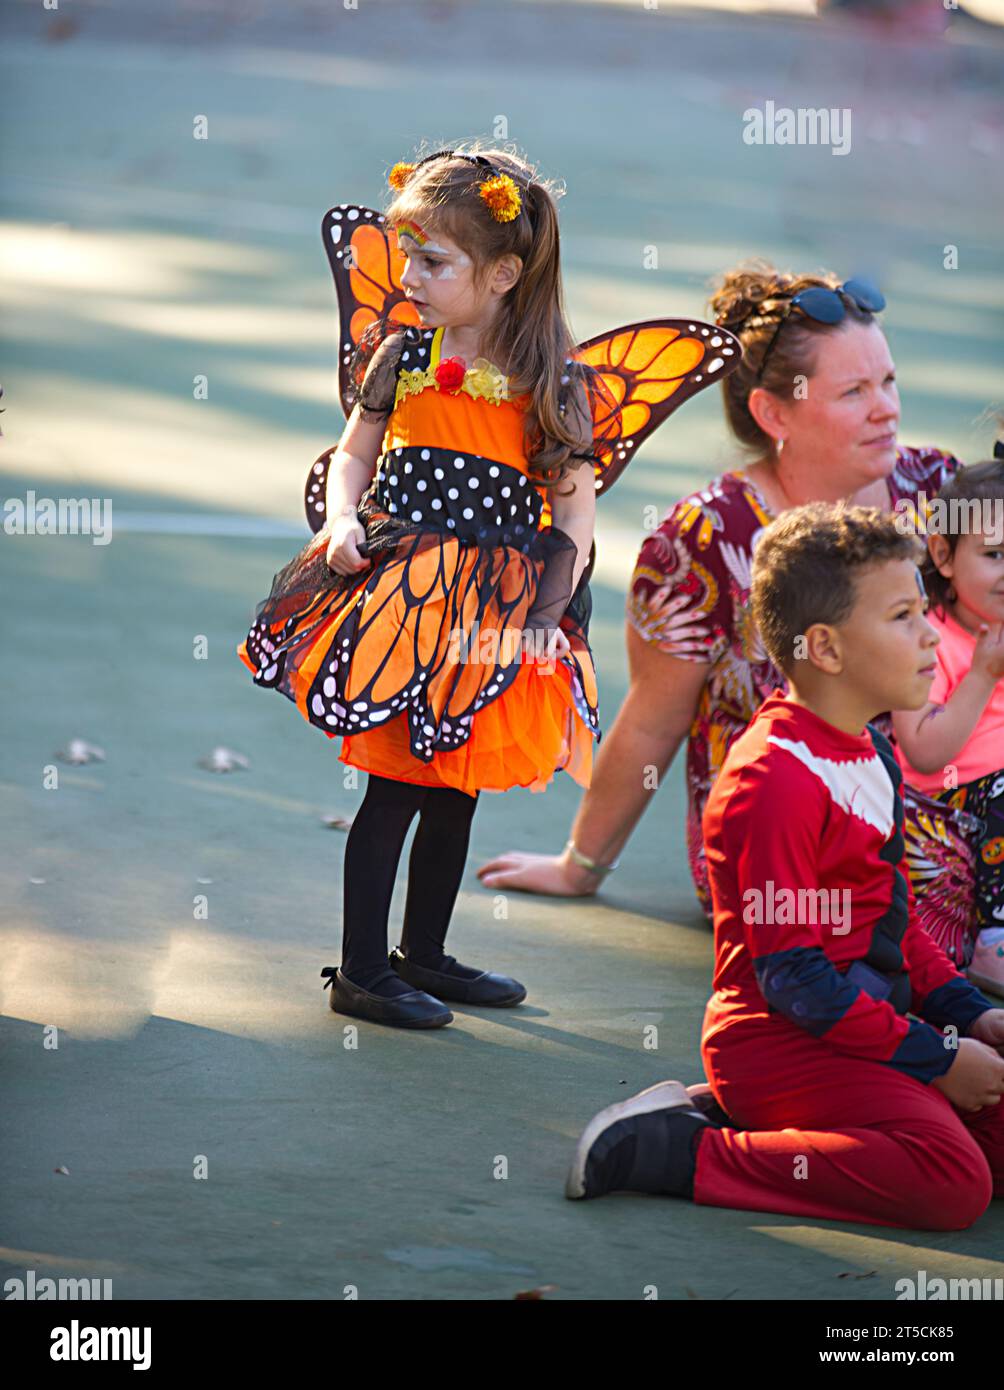 Halloweenpalooza - Dennis, Massachusetts sur Cape Cod. Une fête familiale d'Halloween. Un jeune papillon parmi la foule. Banque D'Images